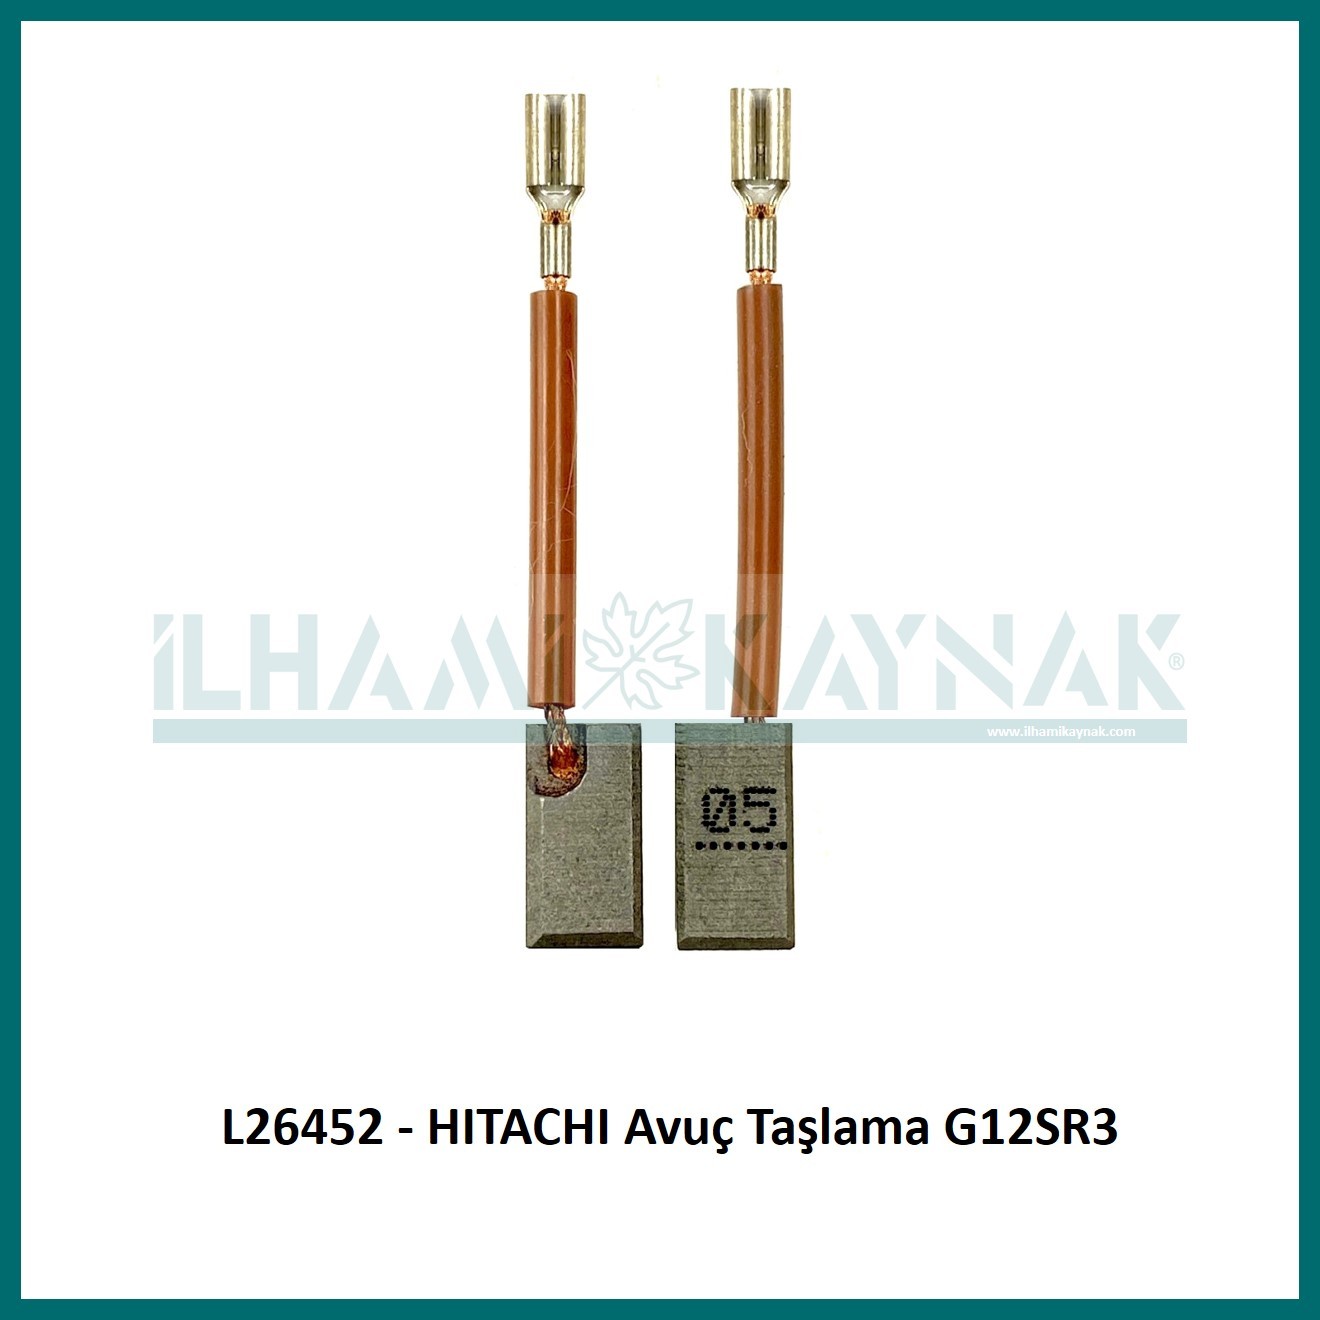 L26452 - HITACHI Avuç Taşlama G12SR3 - 6.5*7.5*14  mm - Minimum Satın Alım: 10 Adet